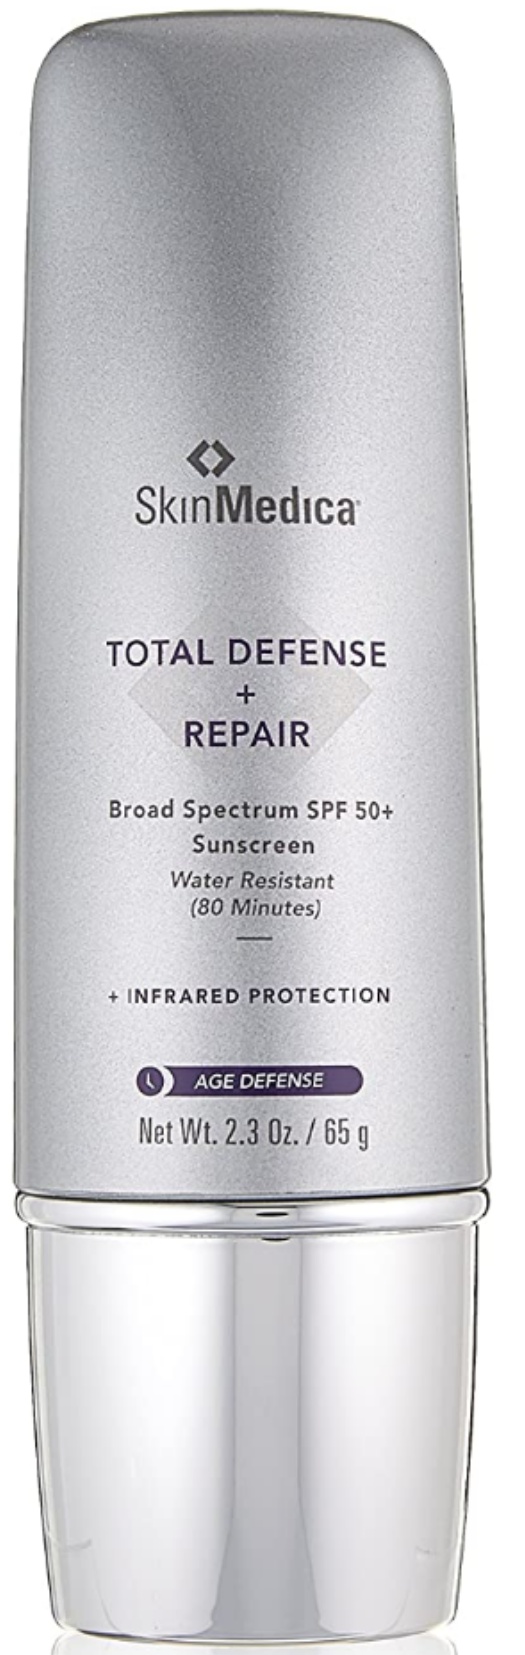 SkinMedica Total Defense + Repair SPF 50+ Sunscreen